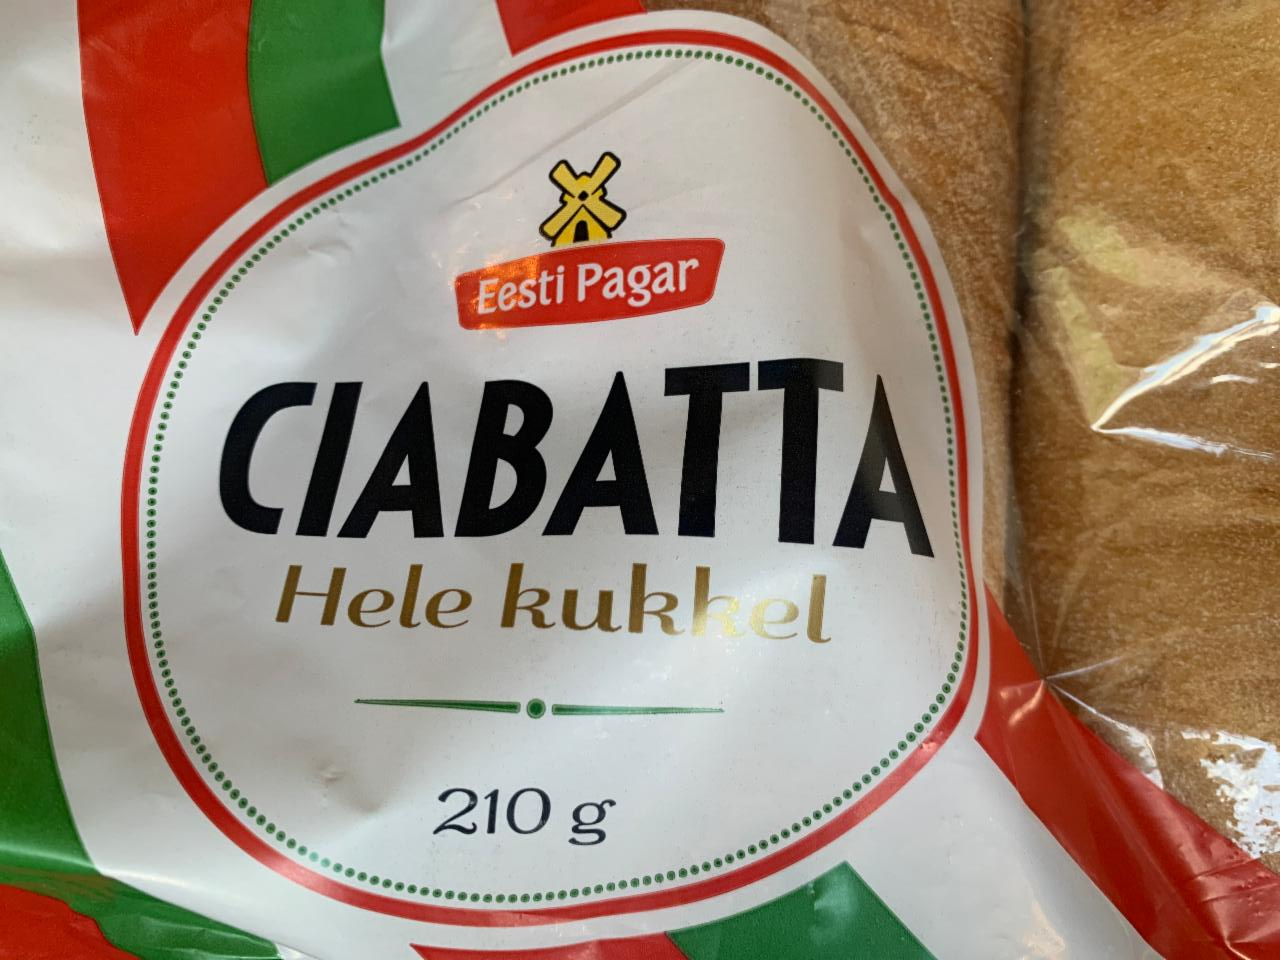 Fotografie - Ciabatta Hele kukkel Eesti Pagar